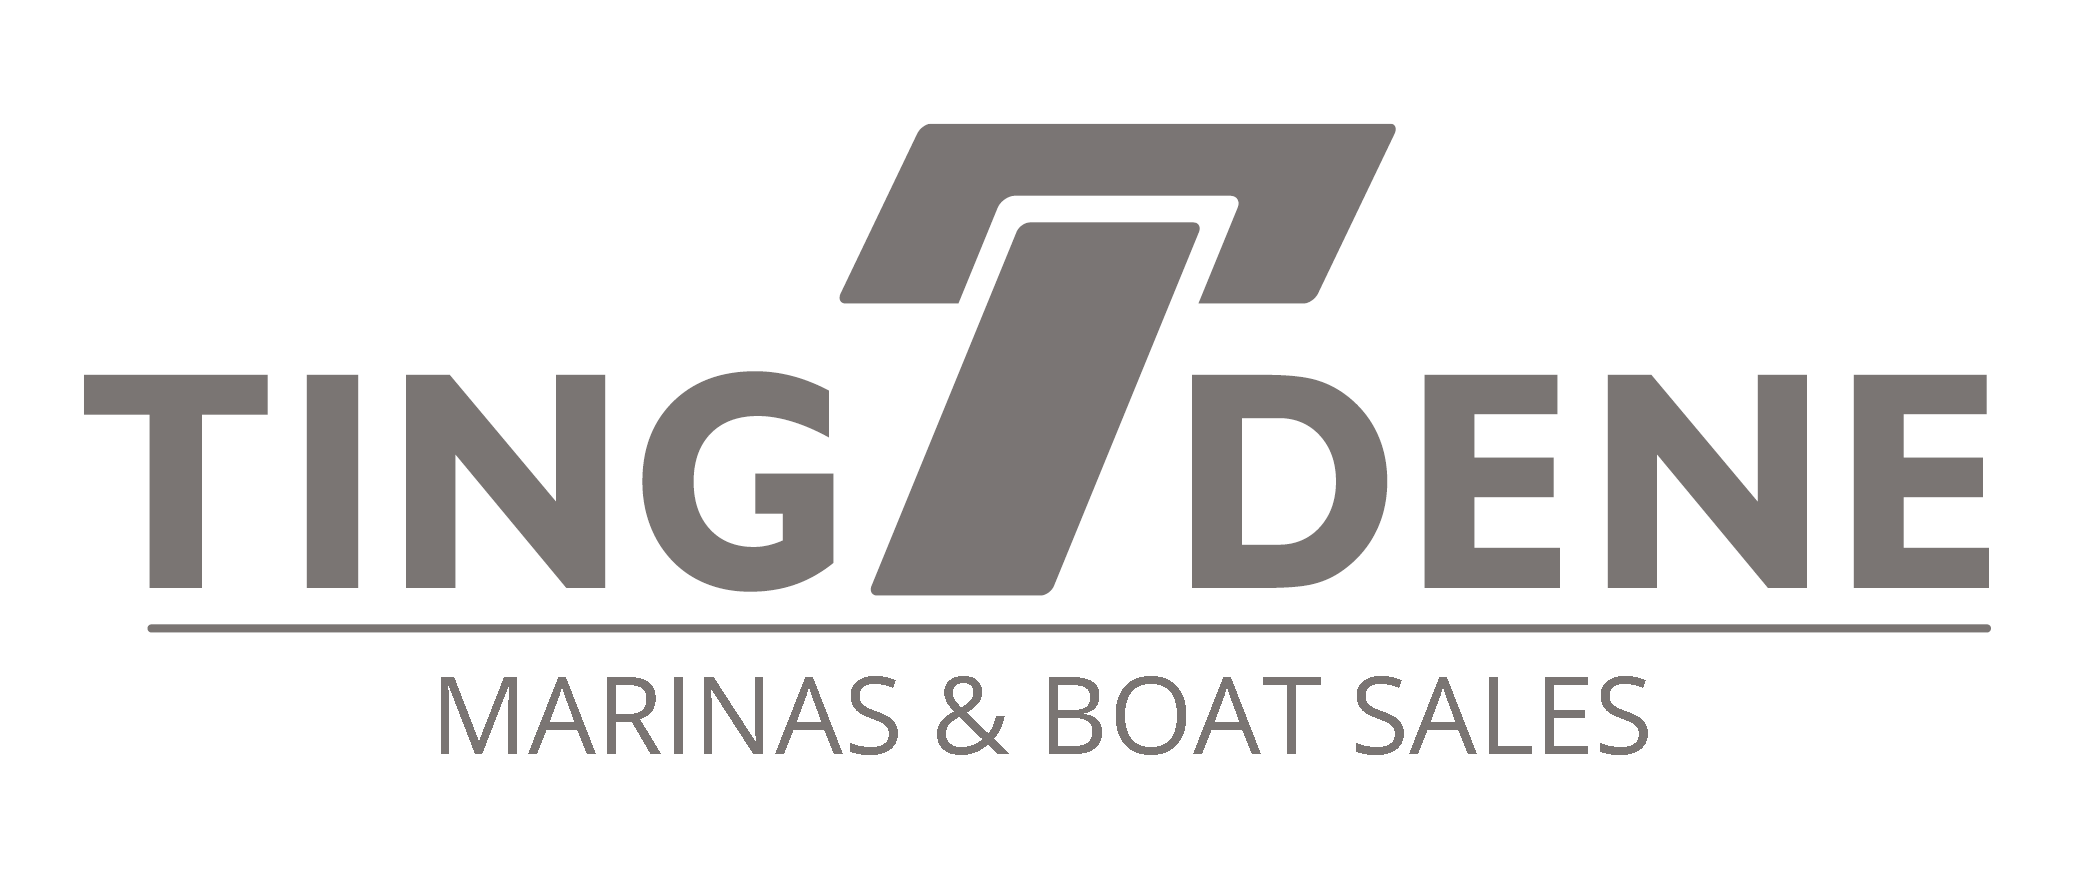 Tingdene Marinas Ltd \ Tingdene Boat Sales Ltd